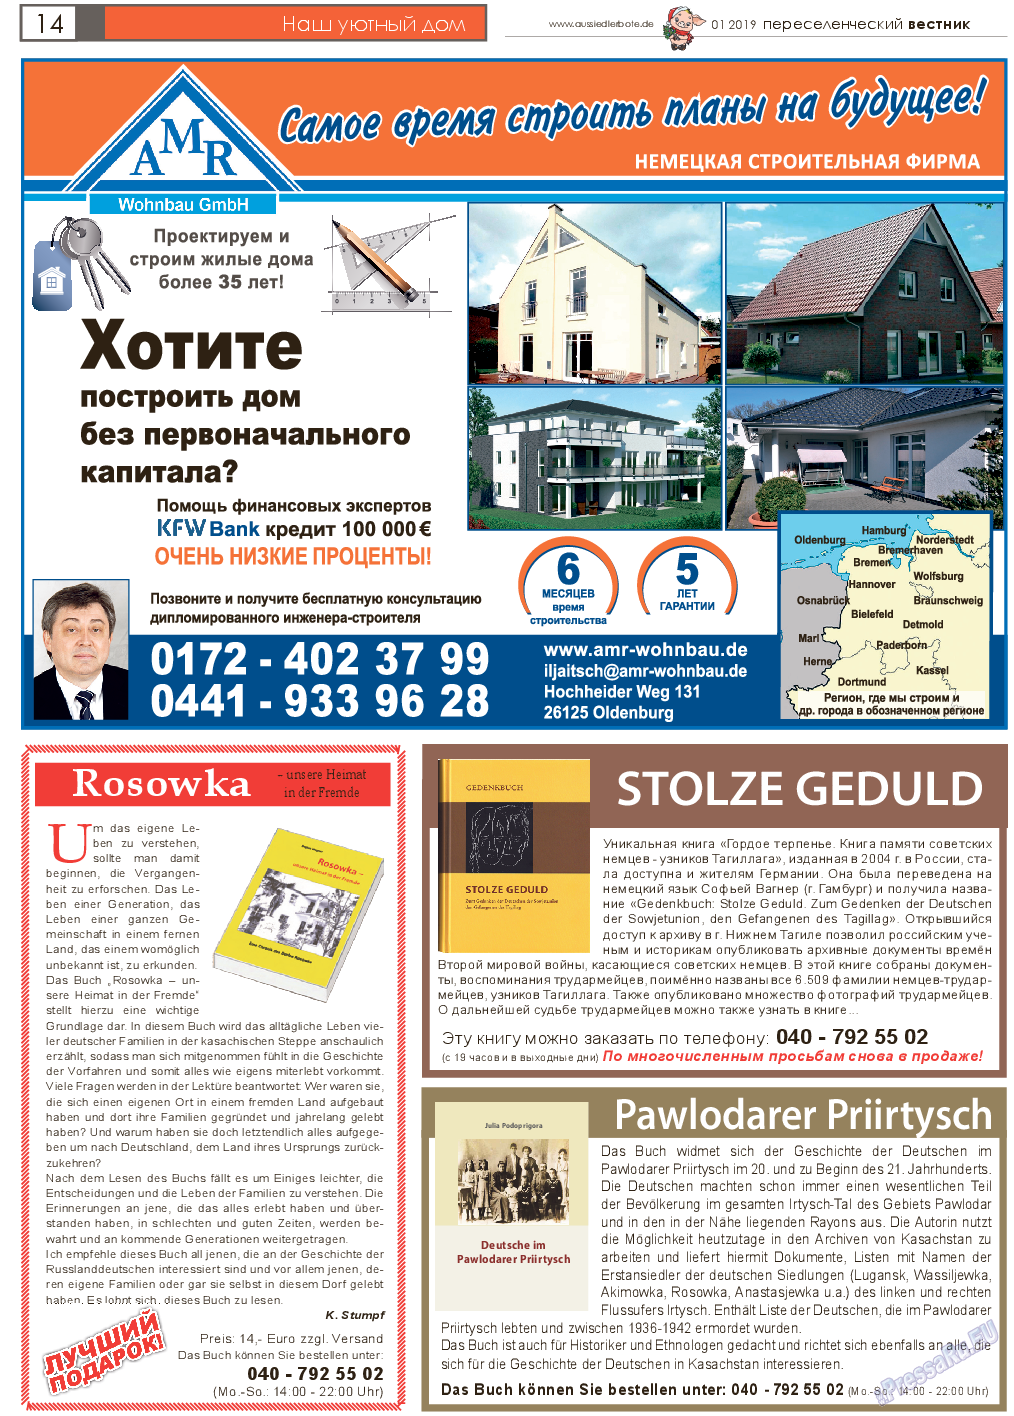 Переселенческий вестник, газета. 2019 №1 стр.14